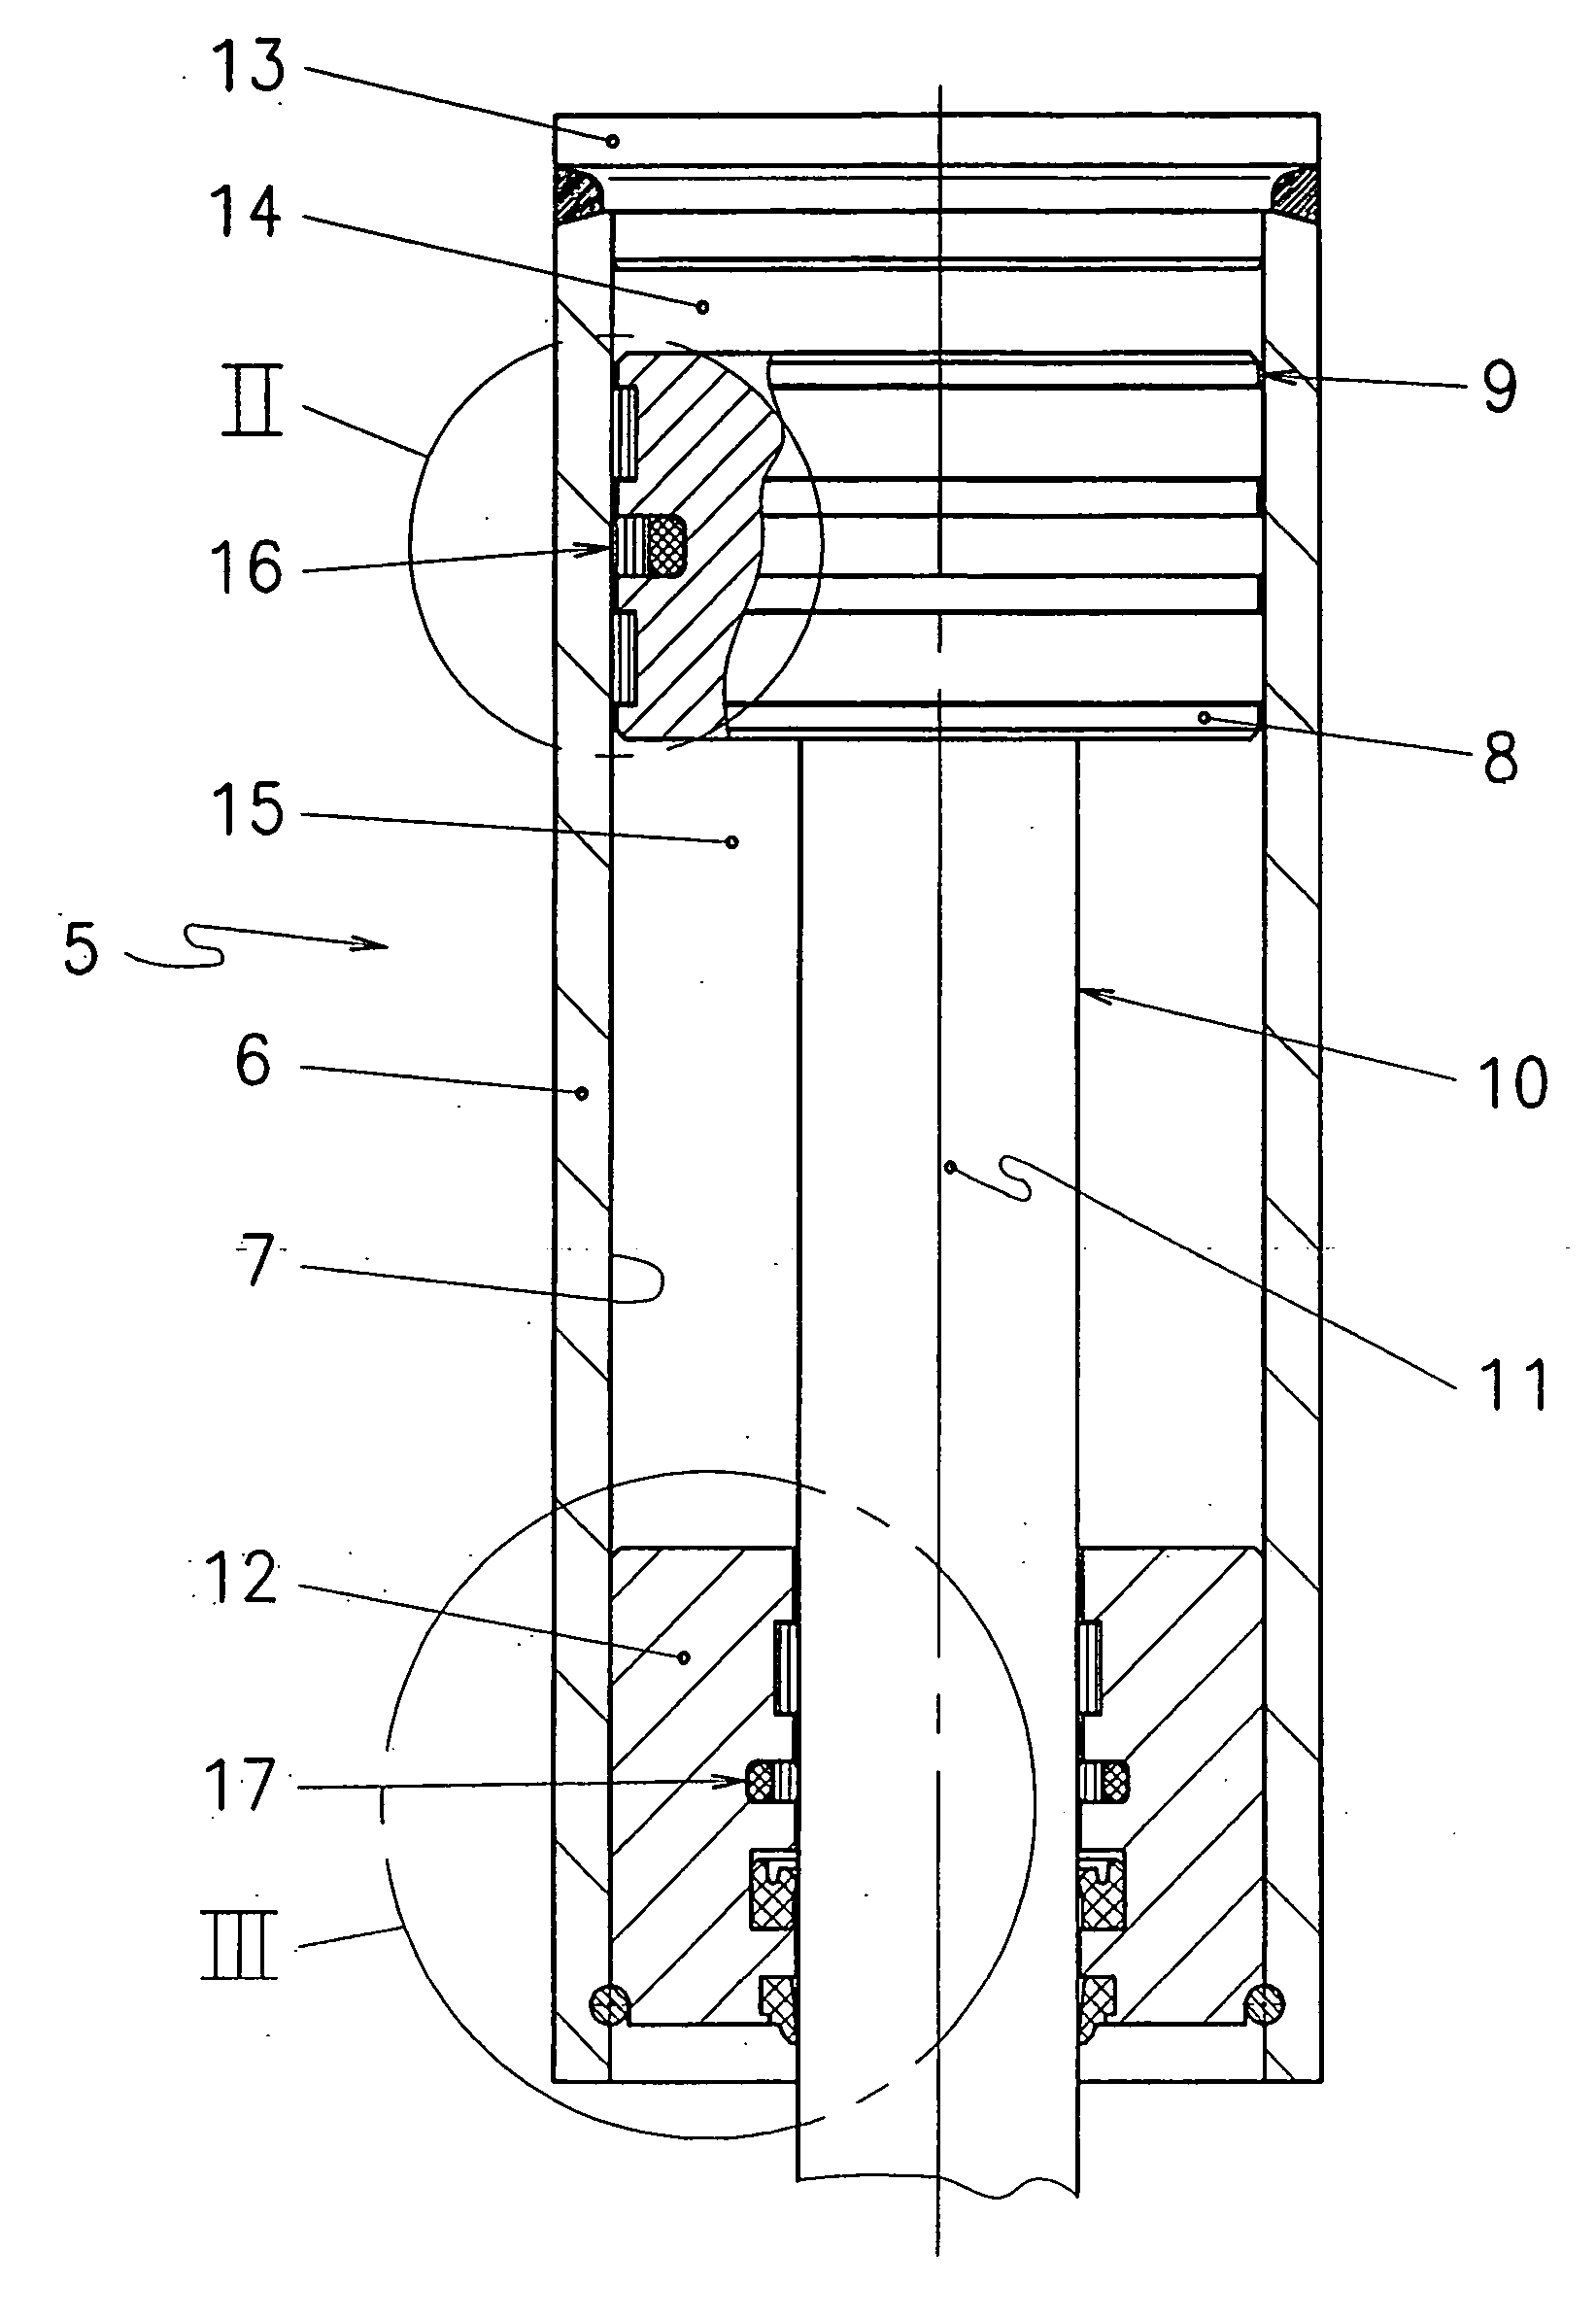 Hydraulic cylinder unit